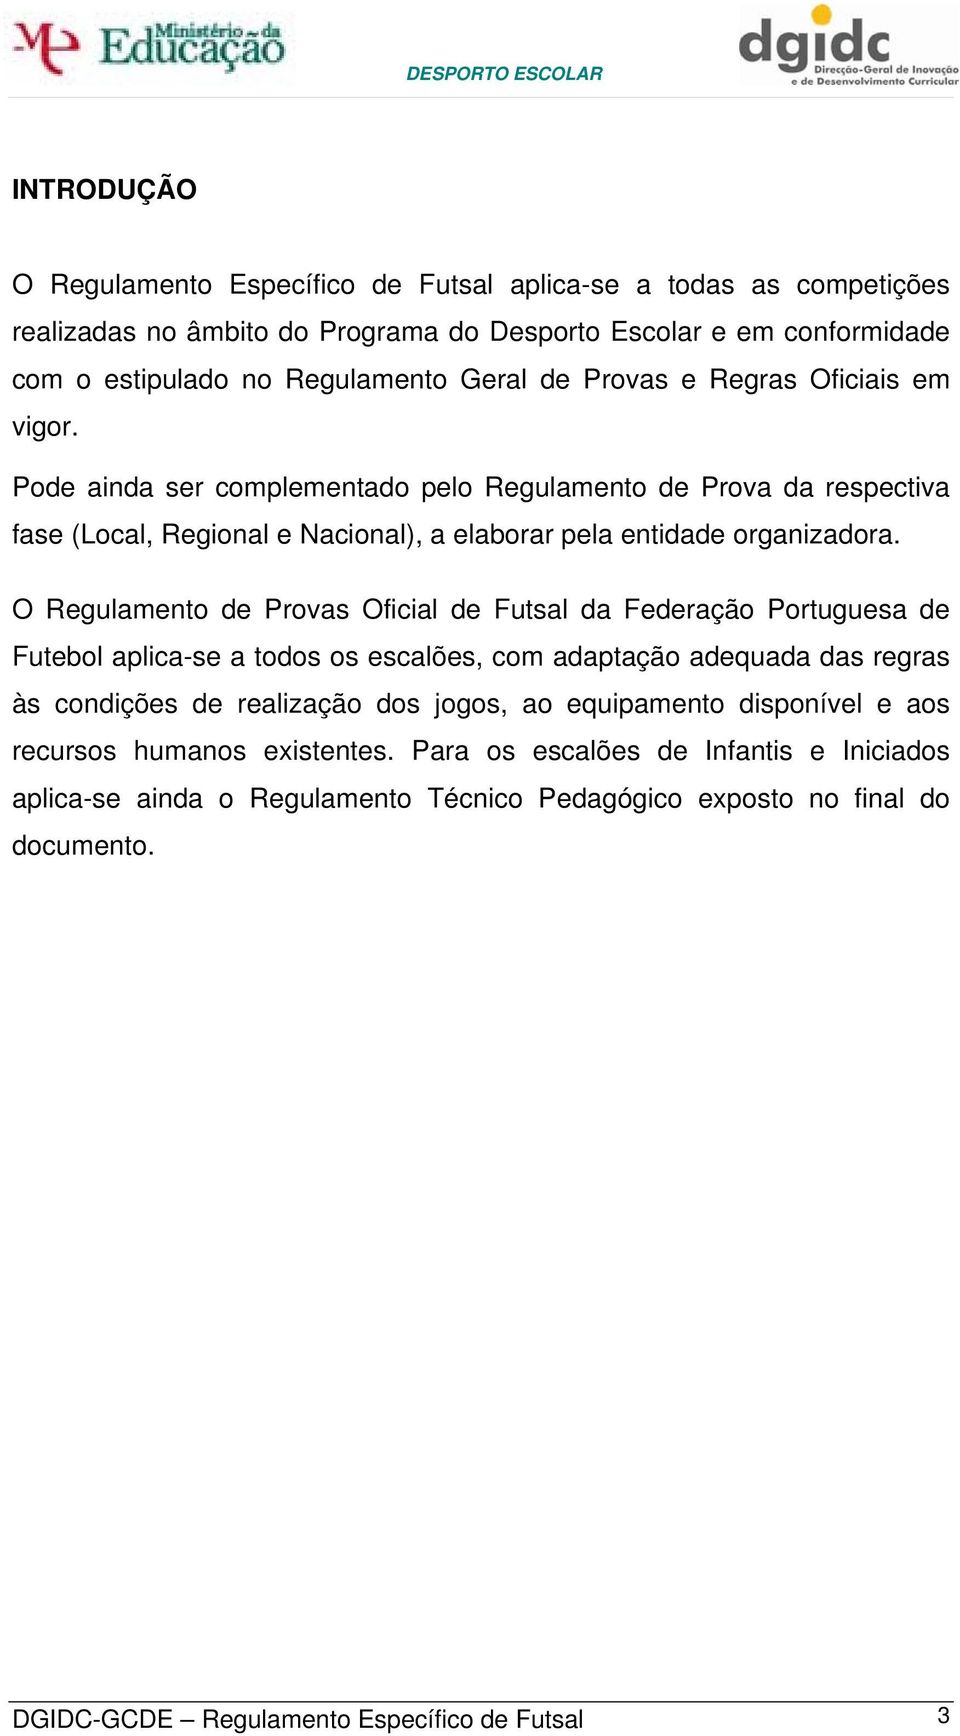 O Regulamento de Provas Oficial de Futsal da Federação Portuguesa de Futebol aplica-se a todos os escalões, com adaptação adequada das regras às condições de realização dos jogos, ao